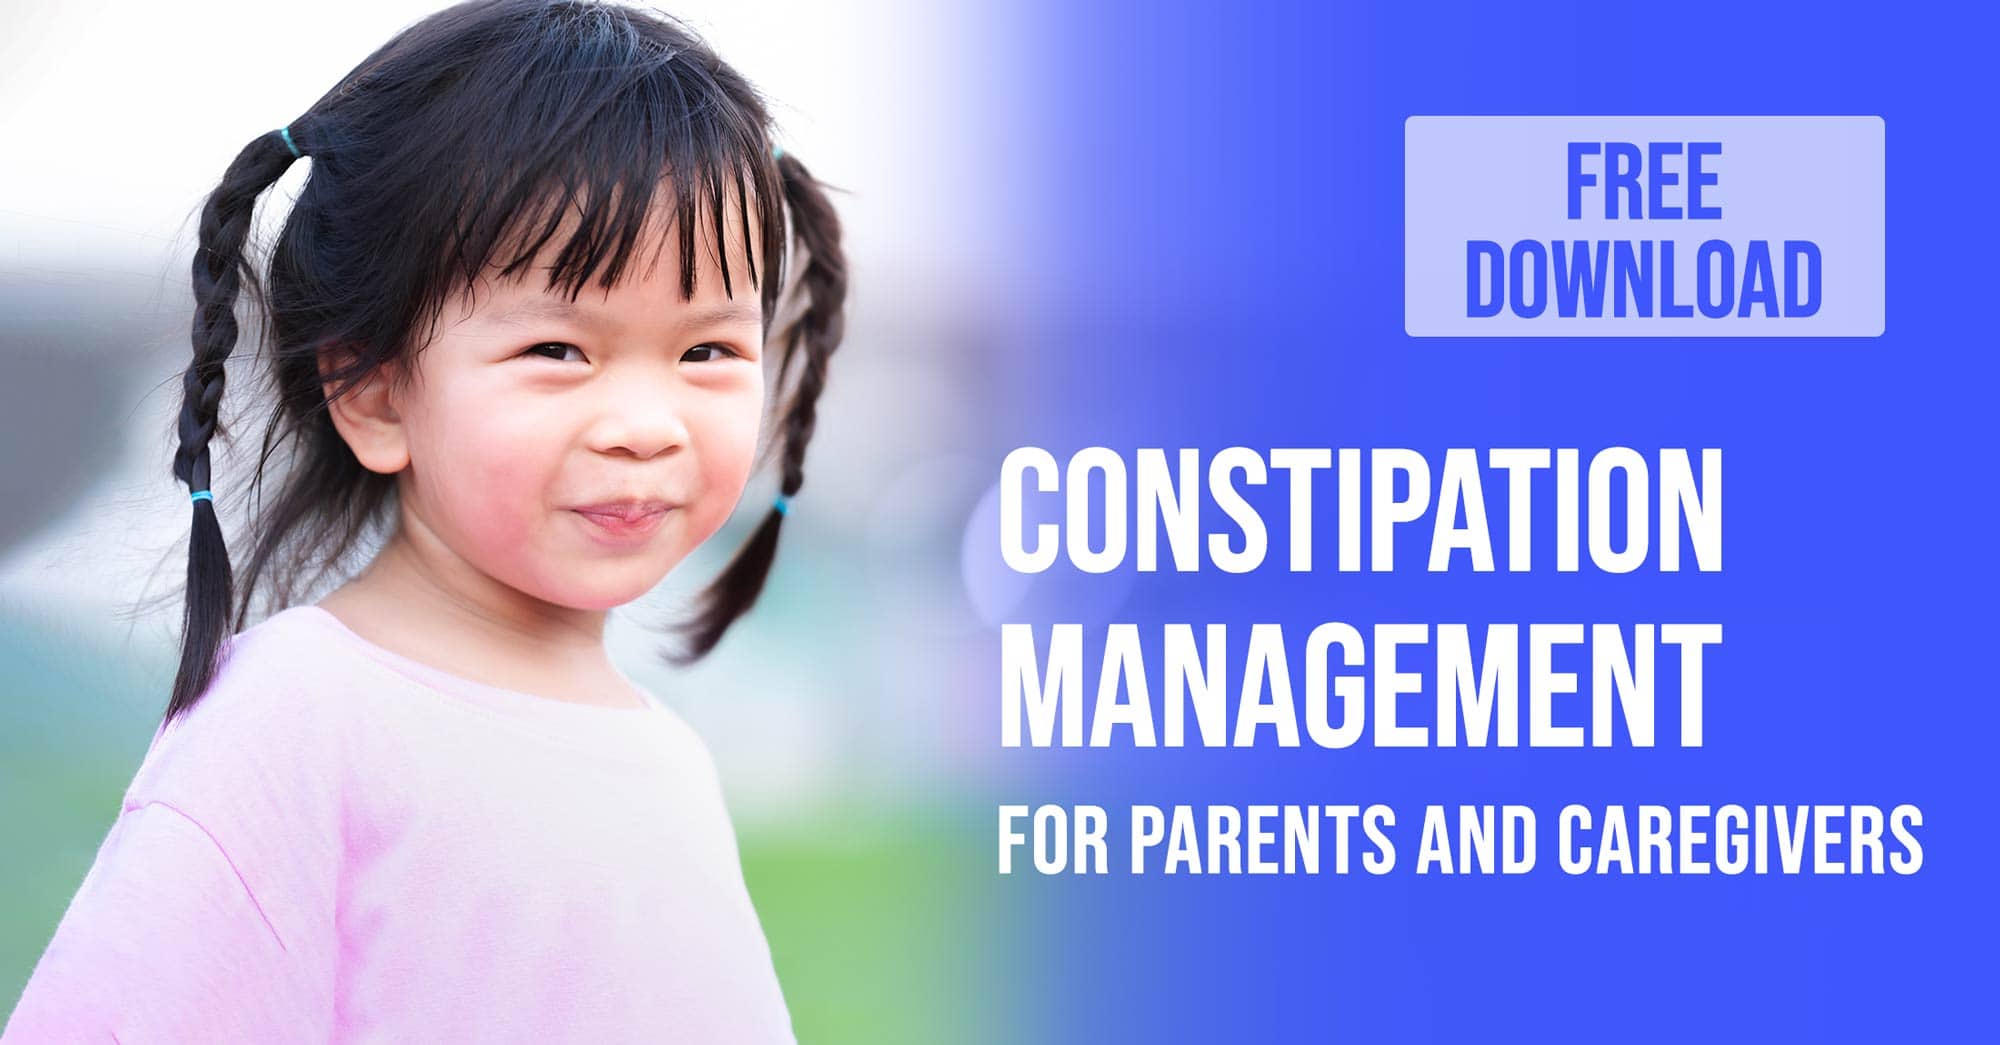 Dr Dina Kulik - Kids Health - Constipation Management